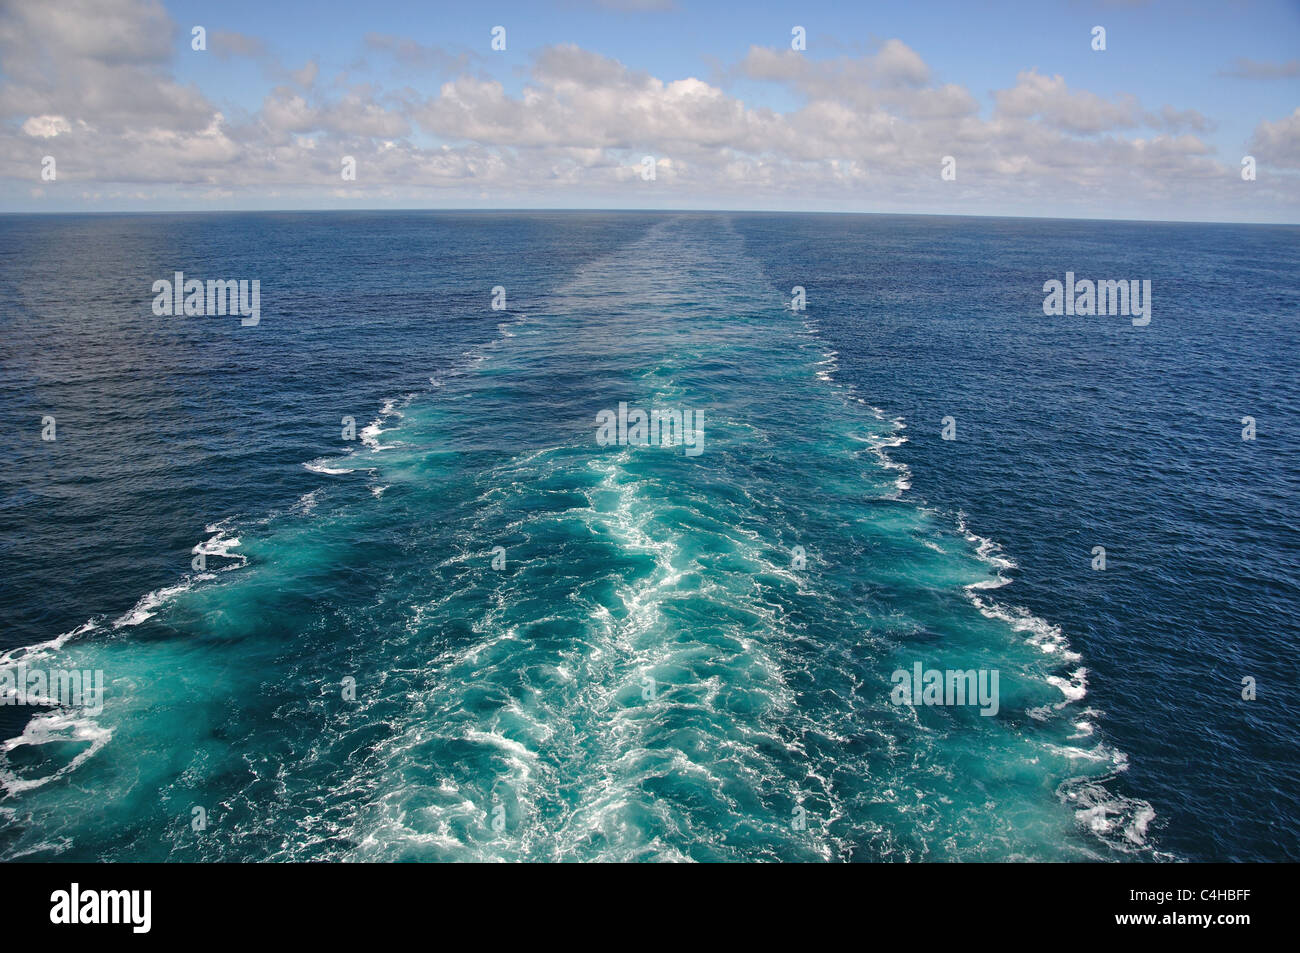 Risveglio da MS Eurodam nave da crociera, Mare del Nord Europa Foto Stock